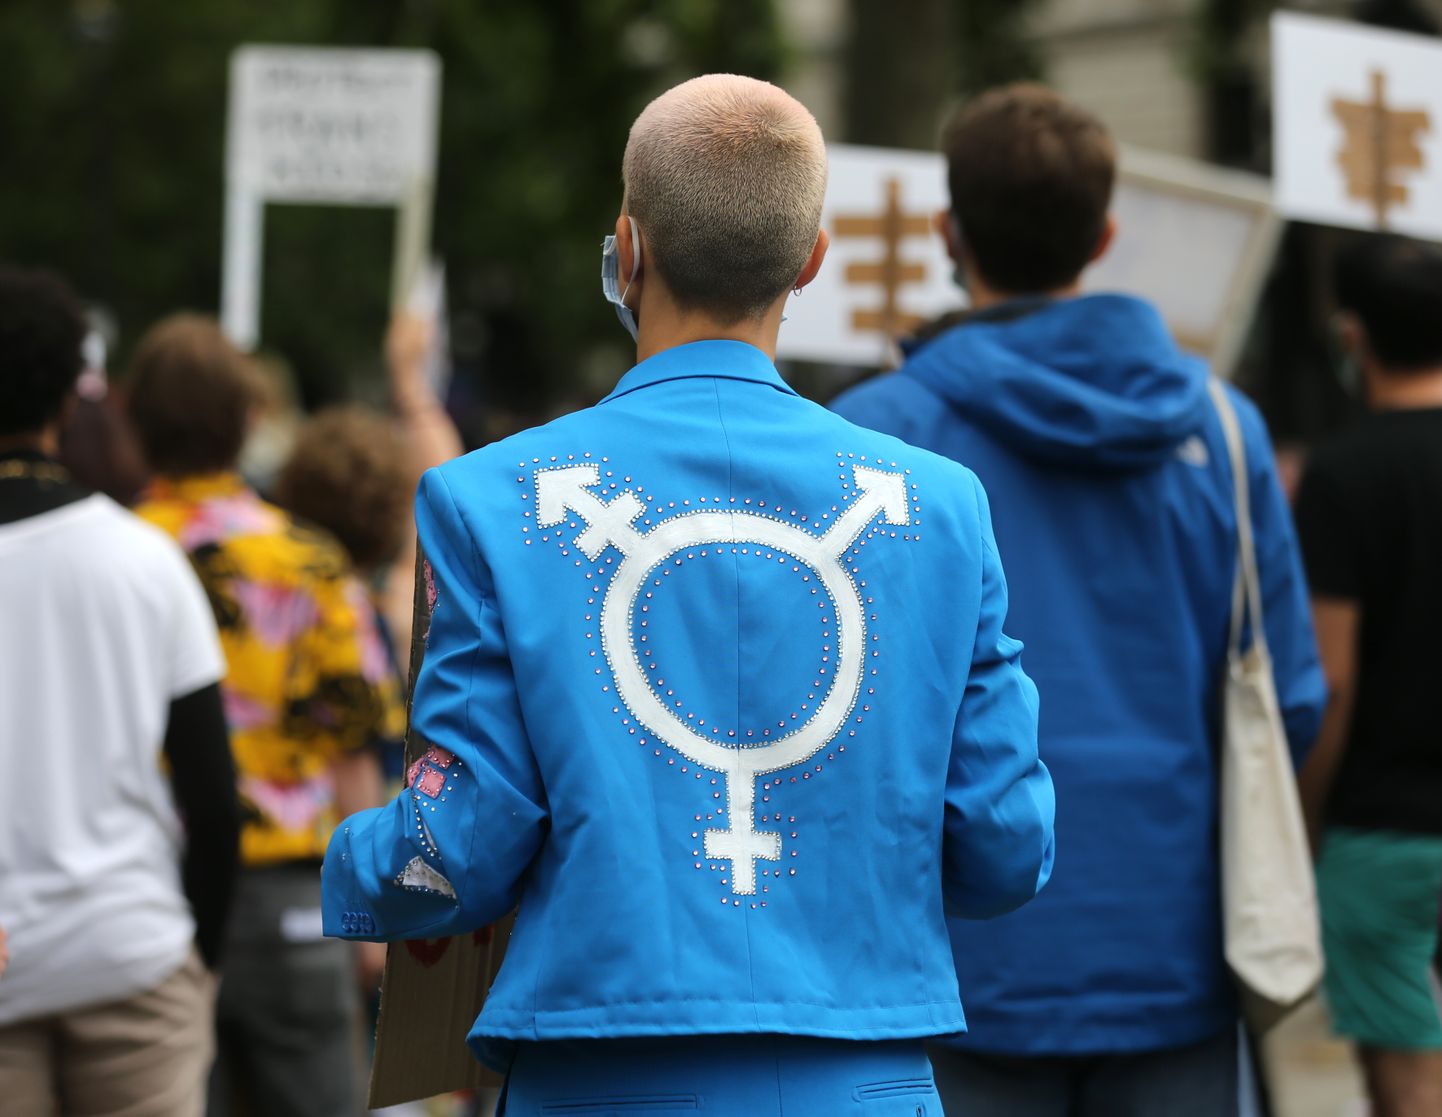 Демонстрант в ярко-синей куртке с изображением гендерно-нейтрального символа. Иллюстративное фото.